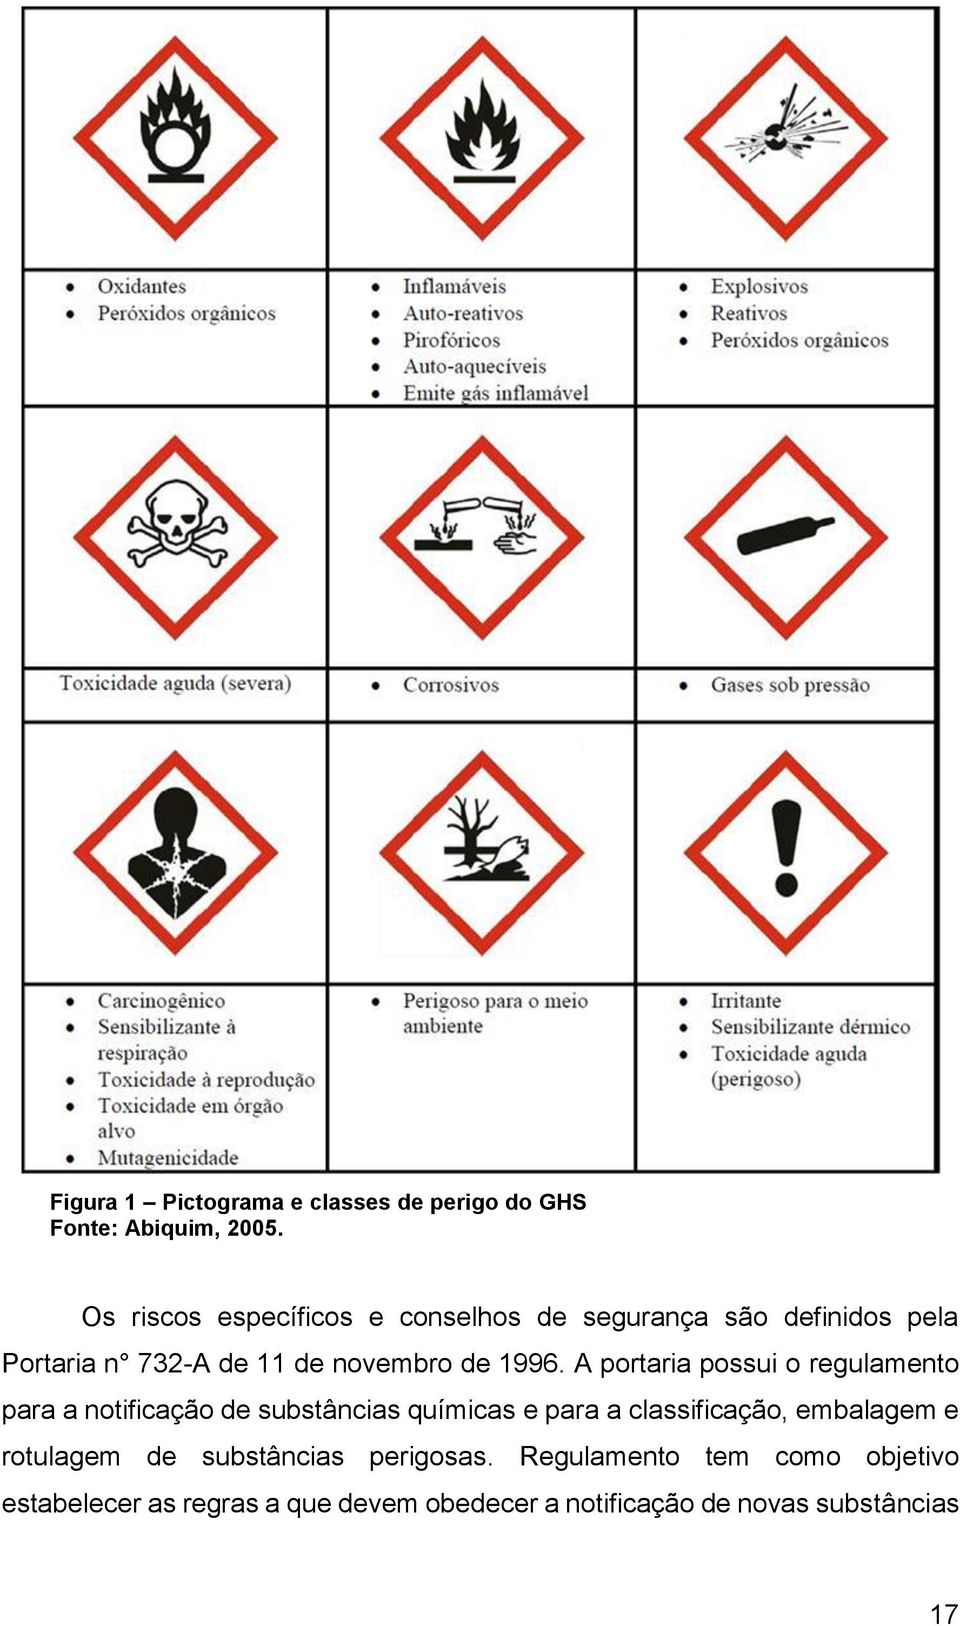 A portaria possui o regulamento para a notificação de substâncias químicas e para a classificação, embalagem